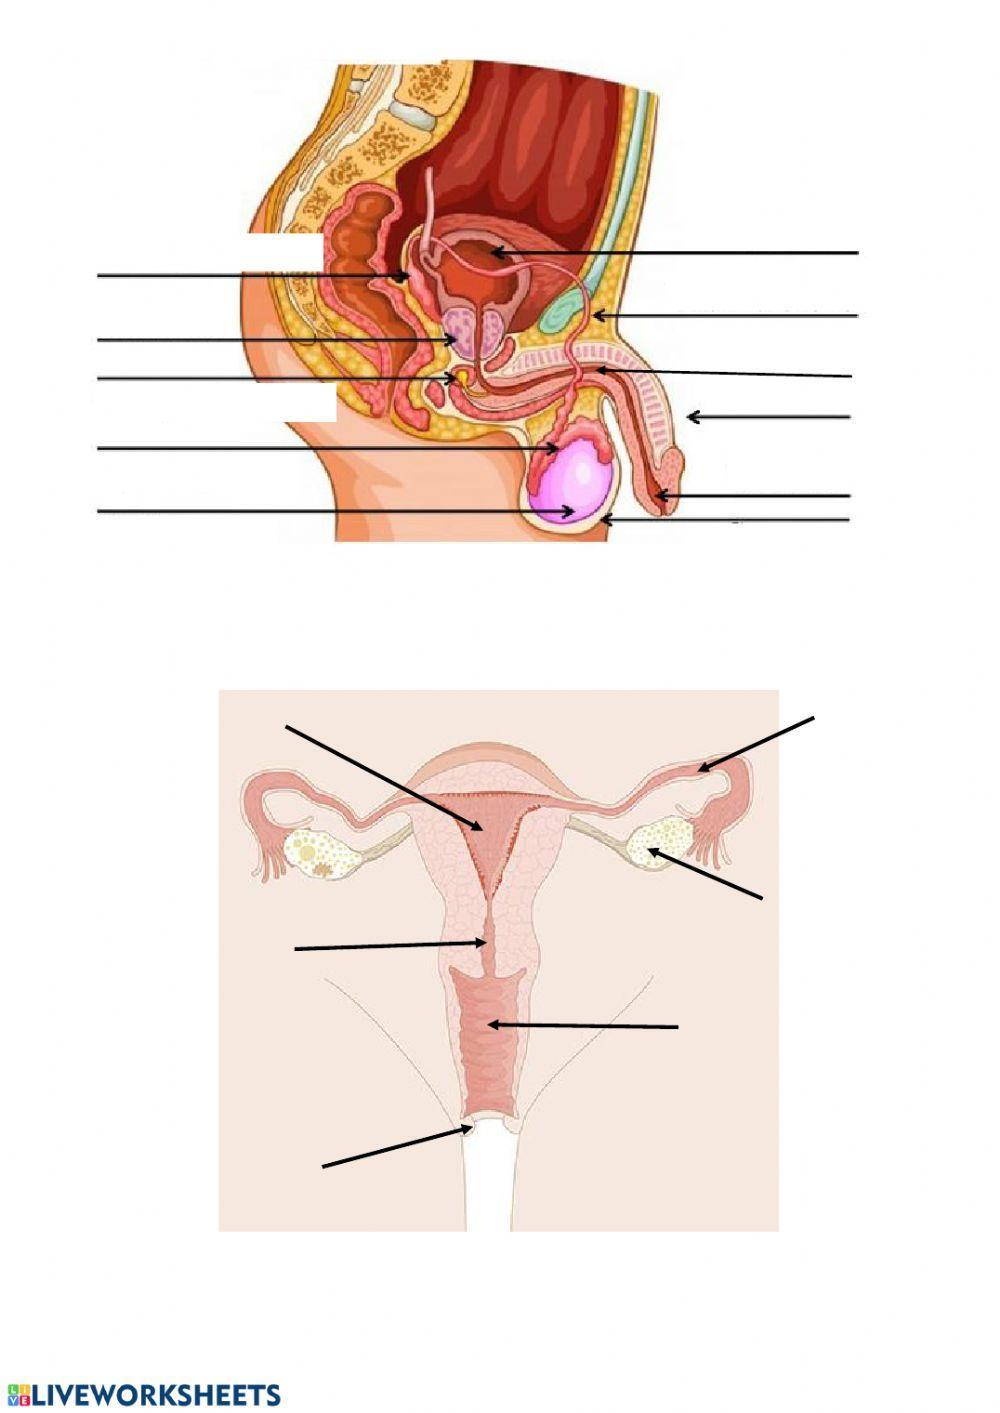 Aparato reproductor masculino y femenino